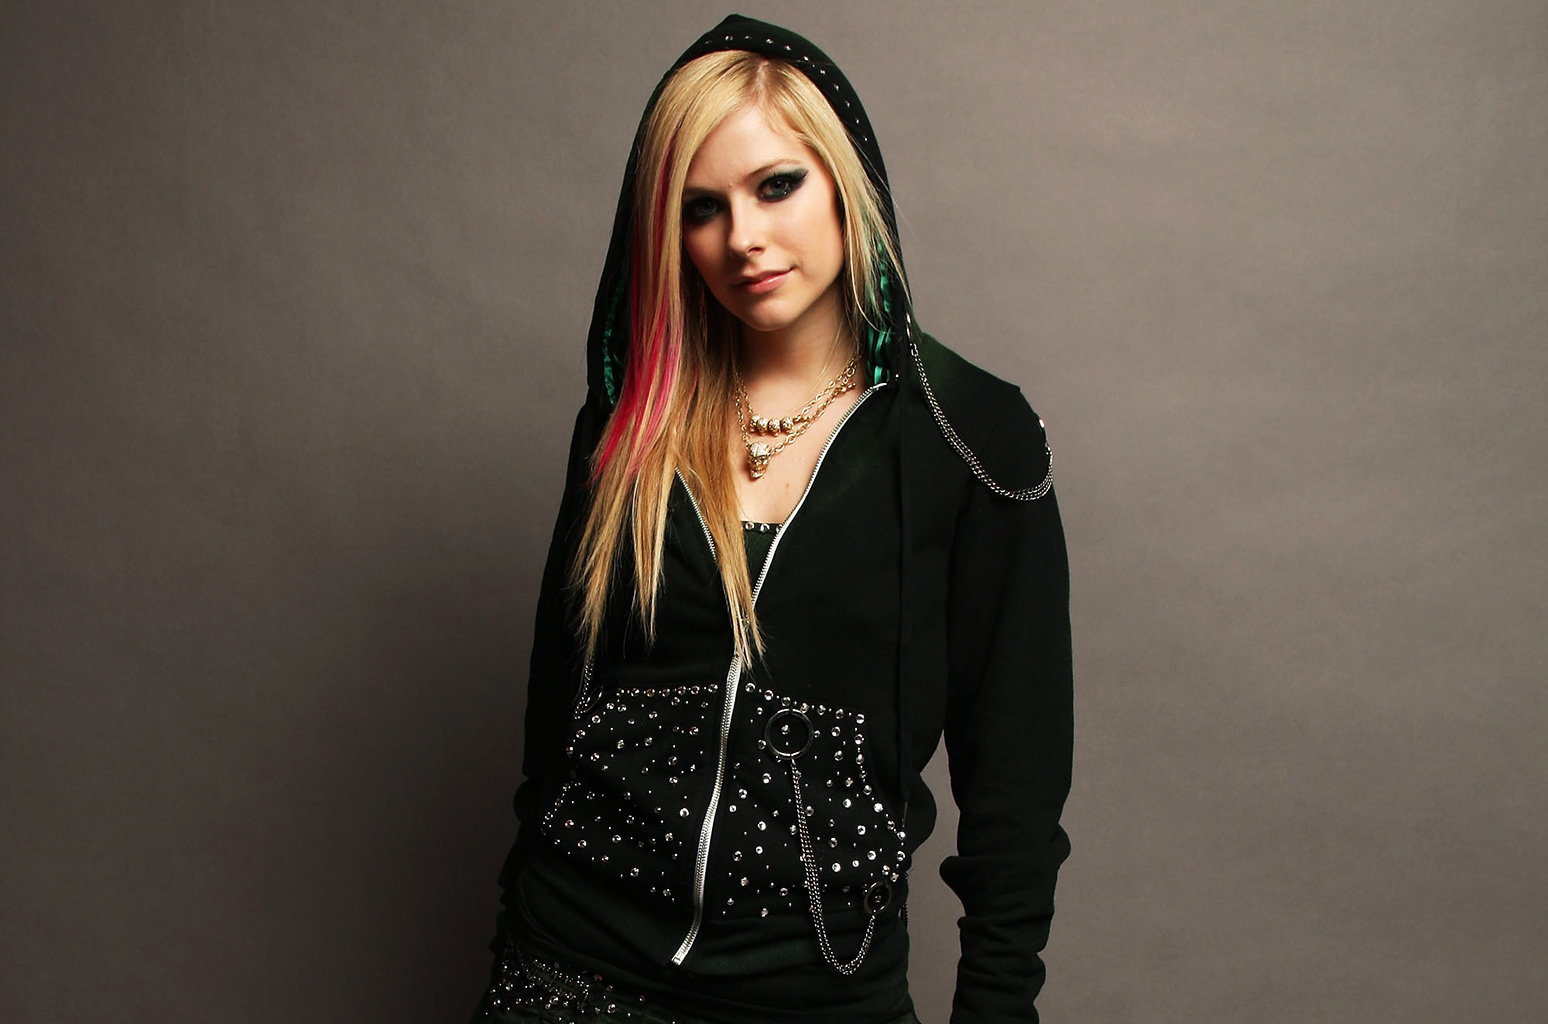 Avril Lavigne（アヴリル・ラヴィーン）のプロフィール・バイオグラフィーまとめ